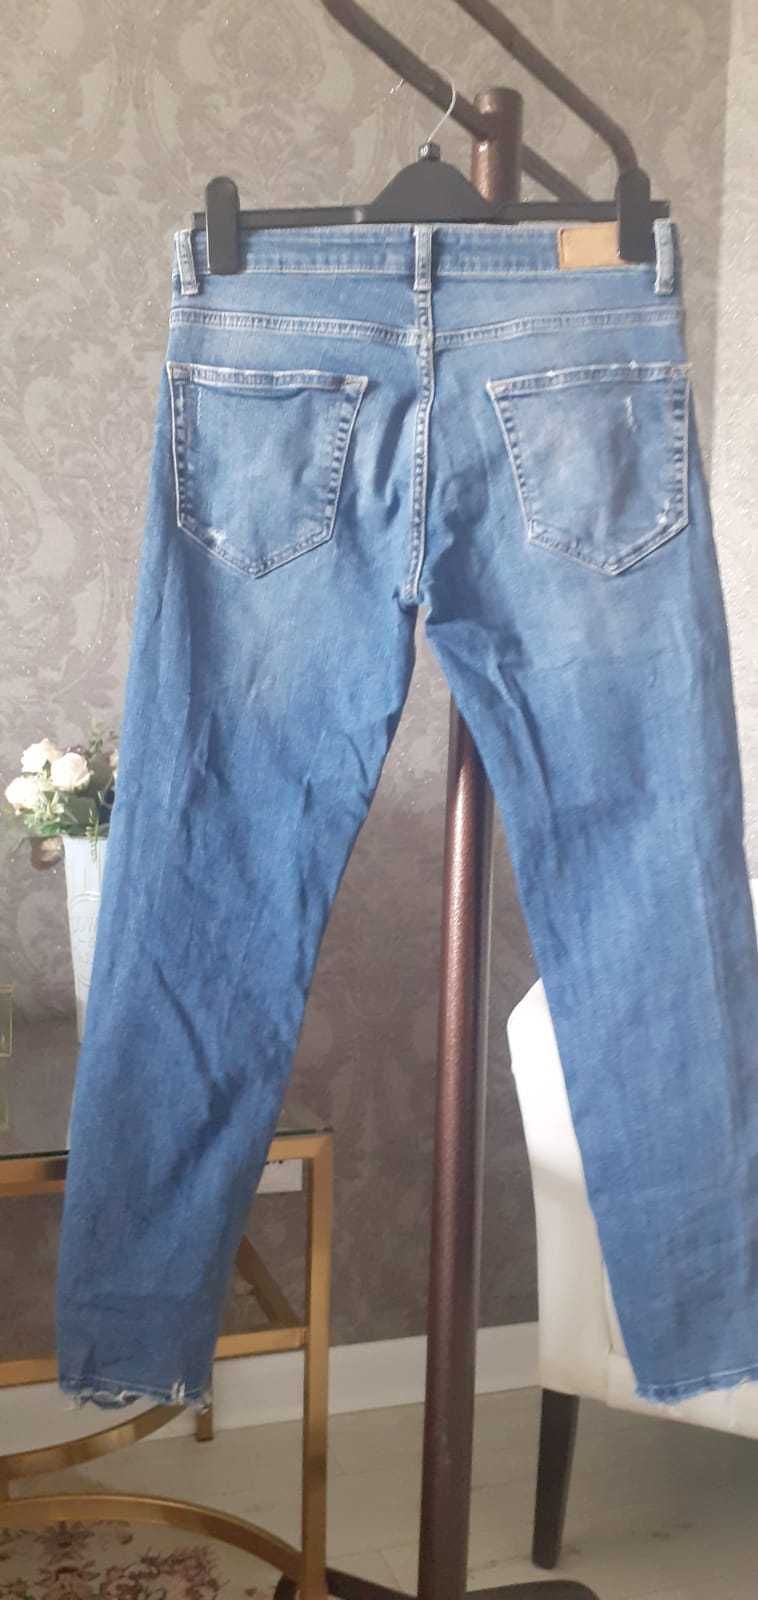 мужские джинсы ZARA на 46 размер производства Турции